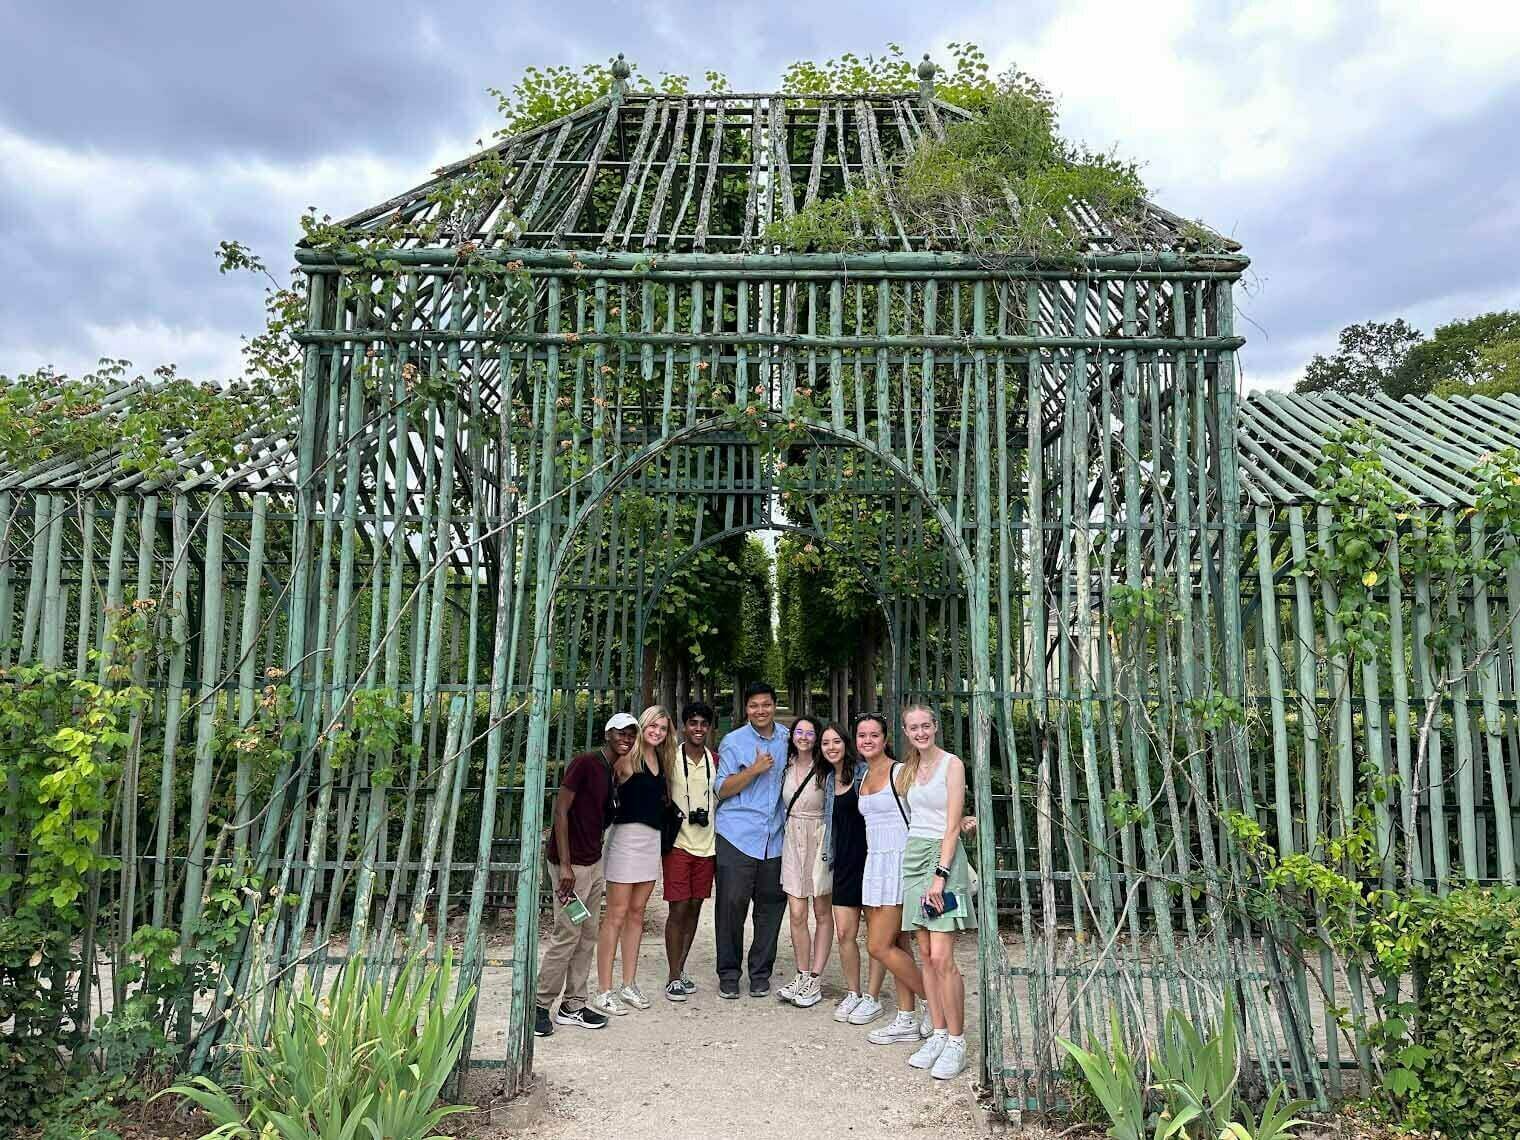 Garden at Versailles